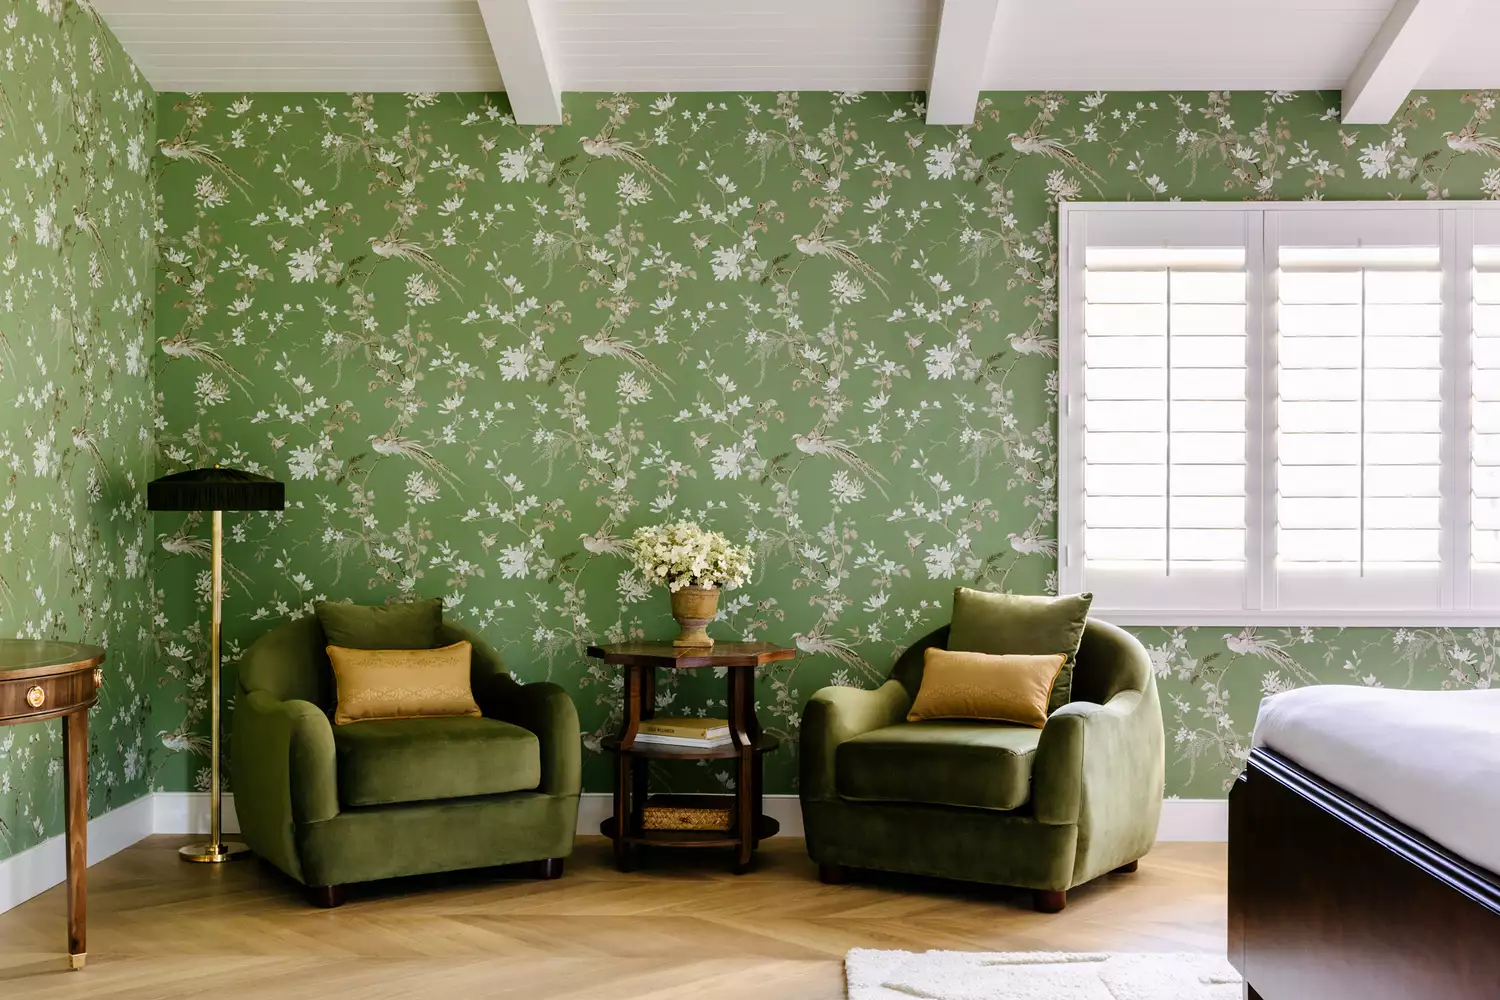 Suite nội thất với giấy dán tường hoa màu xanh lá cây tại The Inn at Rancho Santa Fe